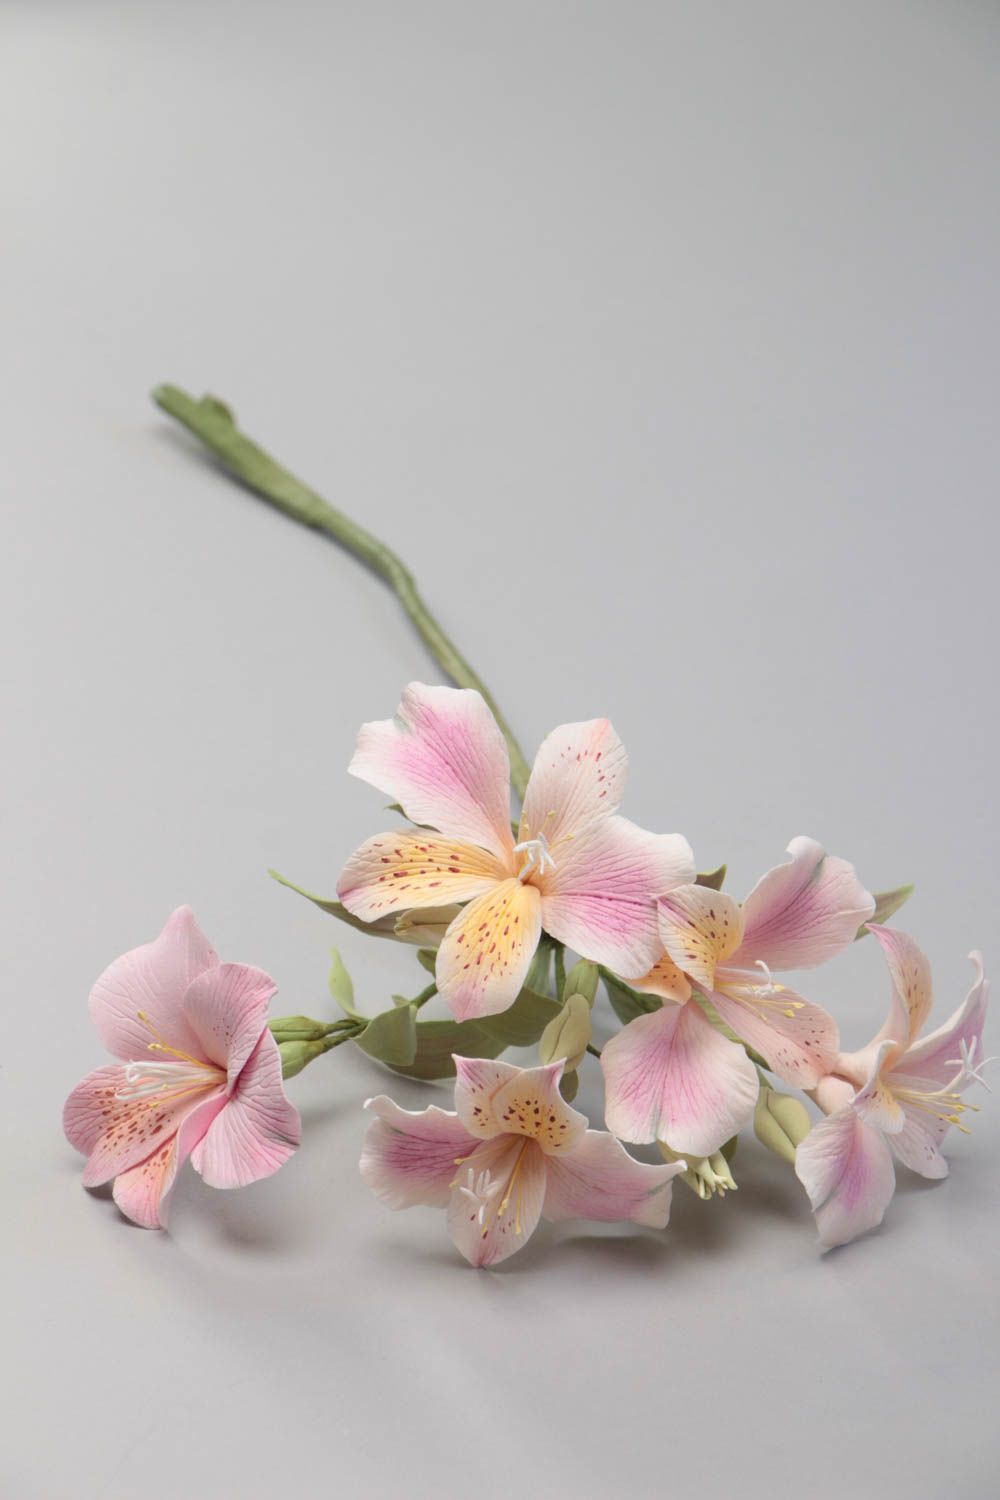 Красивые цветы альстремерии из полимерной глины ручной работы оригинальные розовые фото 2